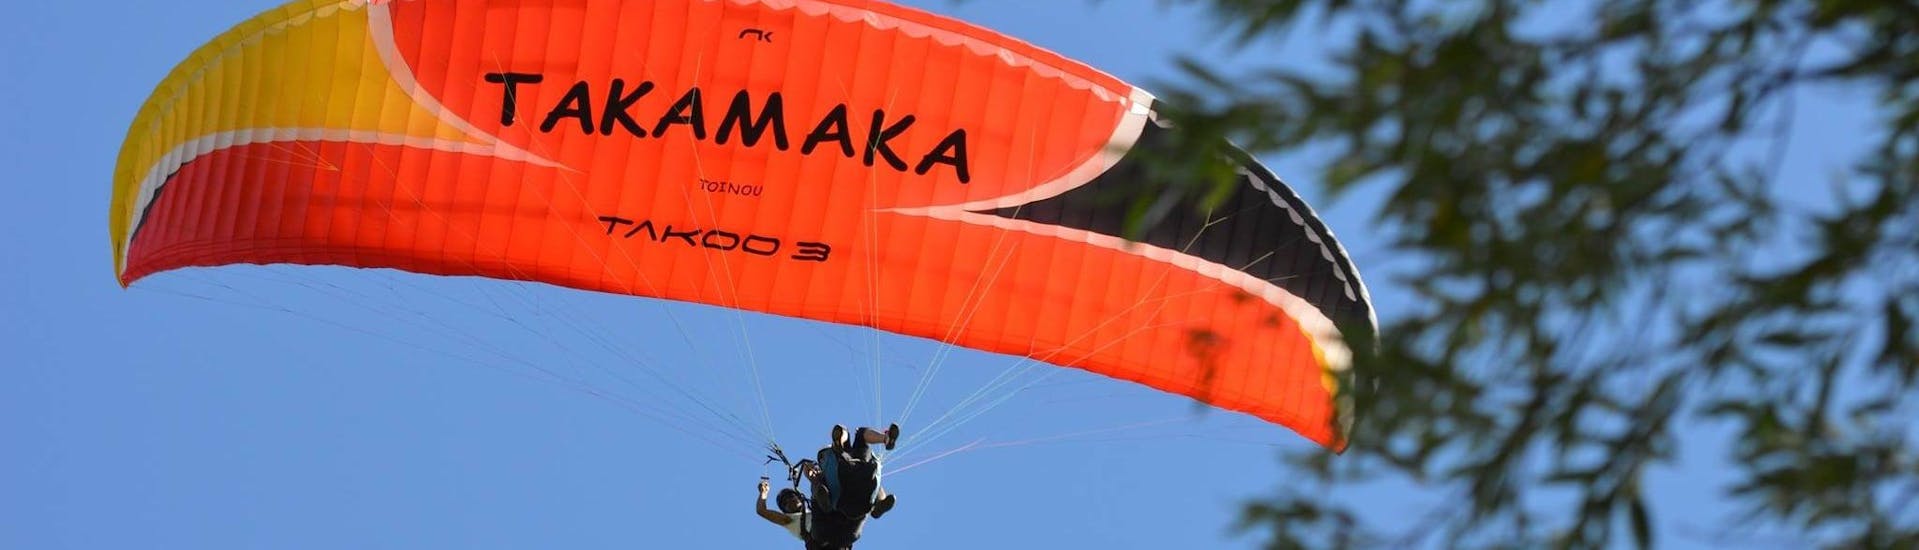 tandem-paragliding-prestige-aix-les-bains-takamaka-aix-les-bains-hero